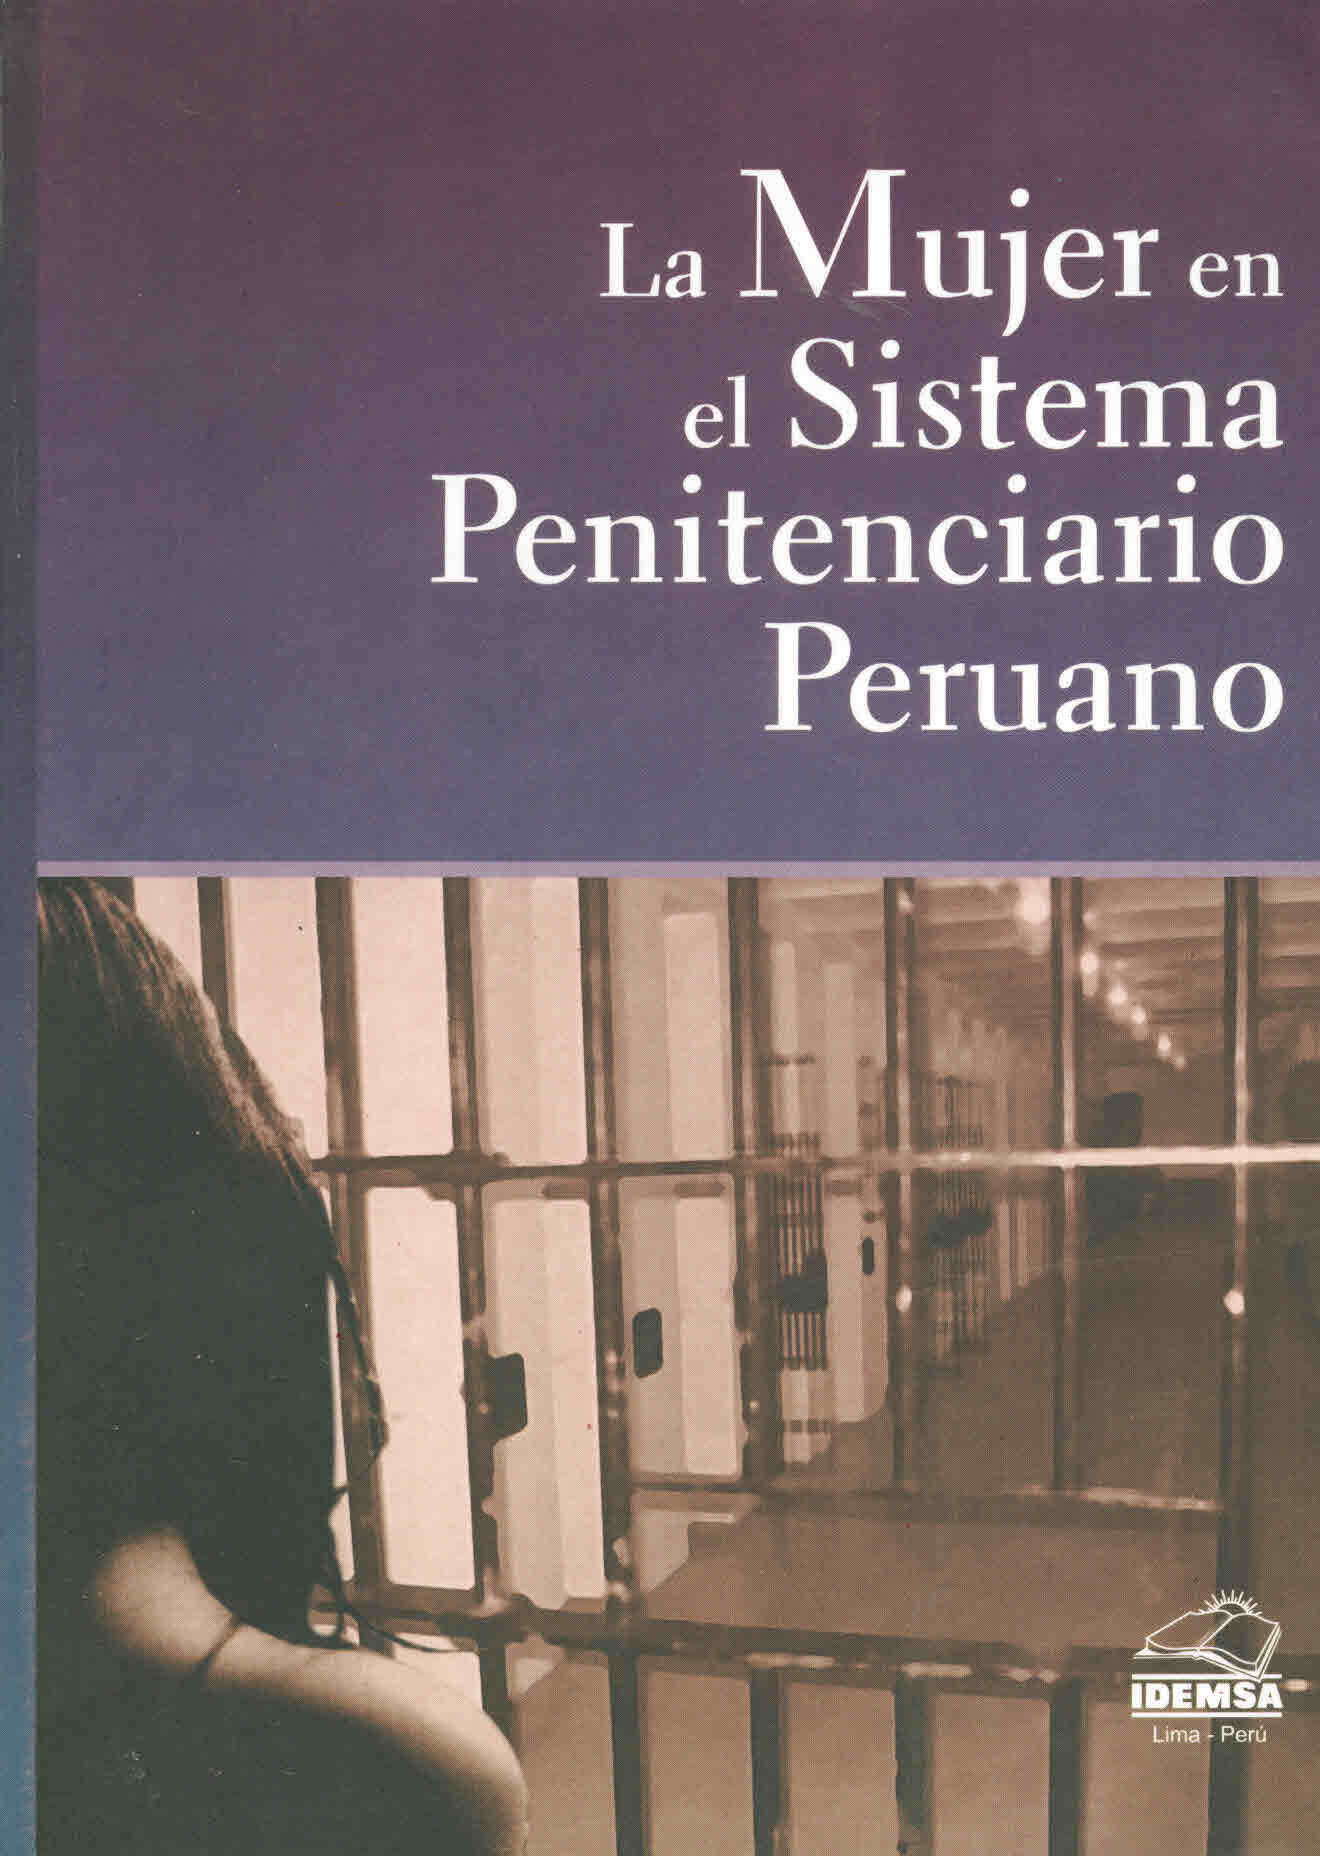 La mujer en el sistema penitenciario peruano. Estudio sobre las condiciones de vida en el Establecimiento Penitenciario de Mujeres de Chorrillos y el Establecimiento Penitenciario de Régimen Cerrado Especial de Mujeres de Chorrillos